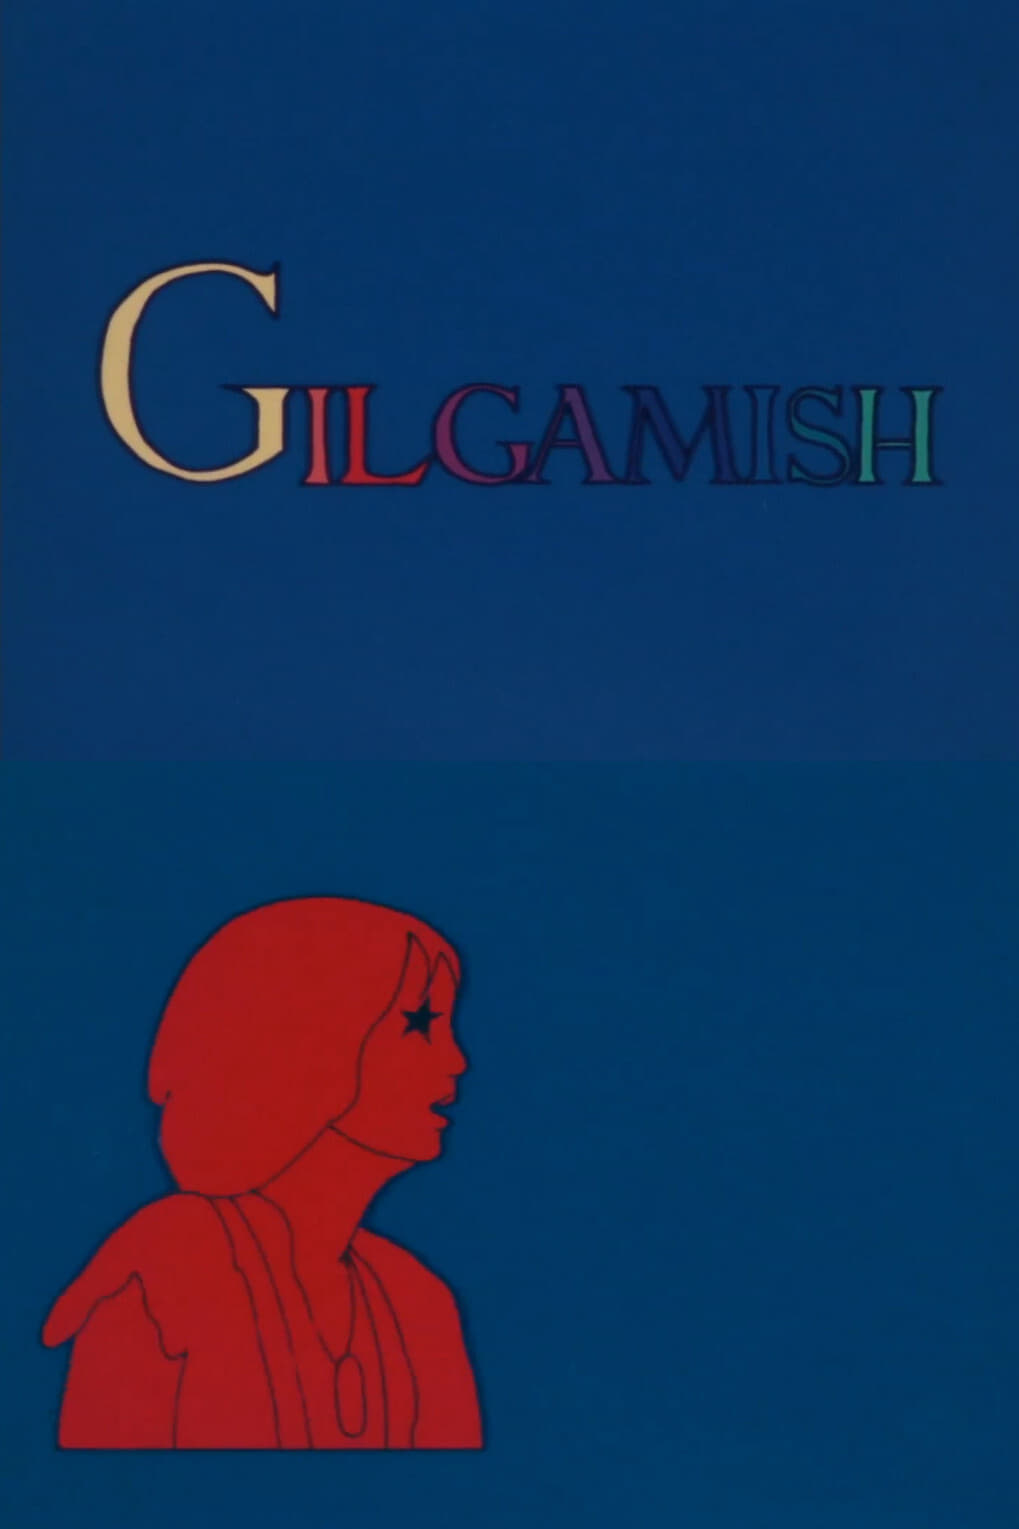 Gilgamish